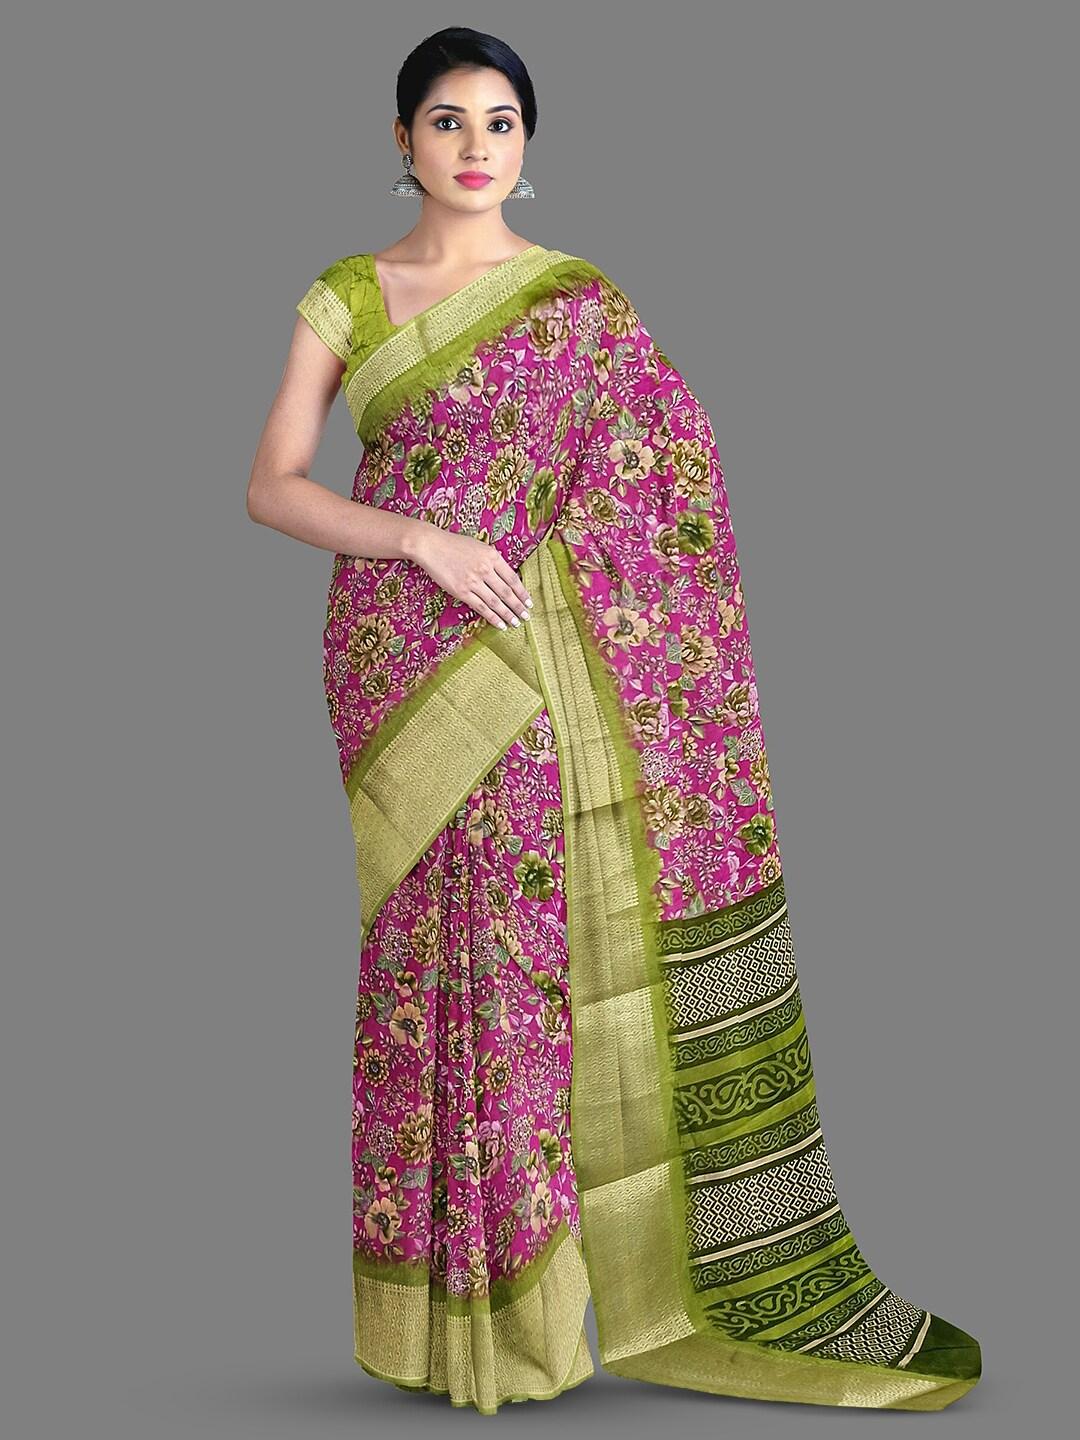 The Chennai Silks Floral Printed Saree